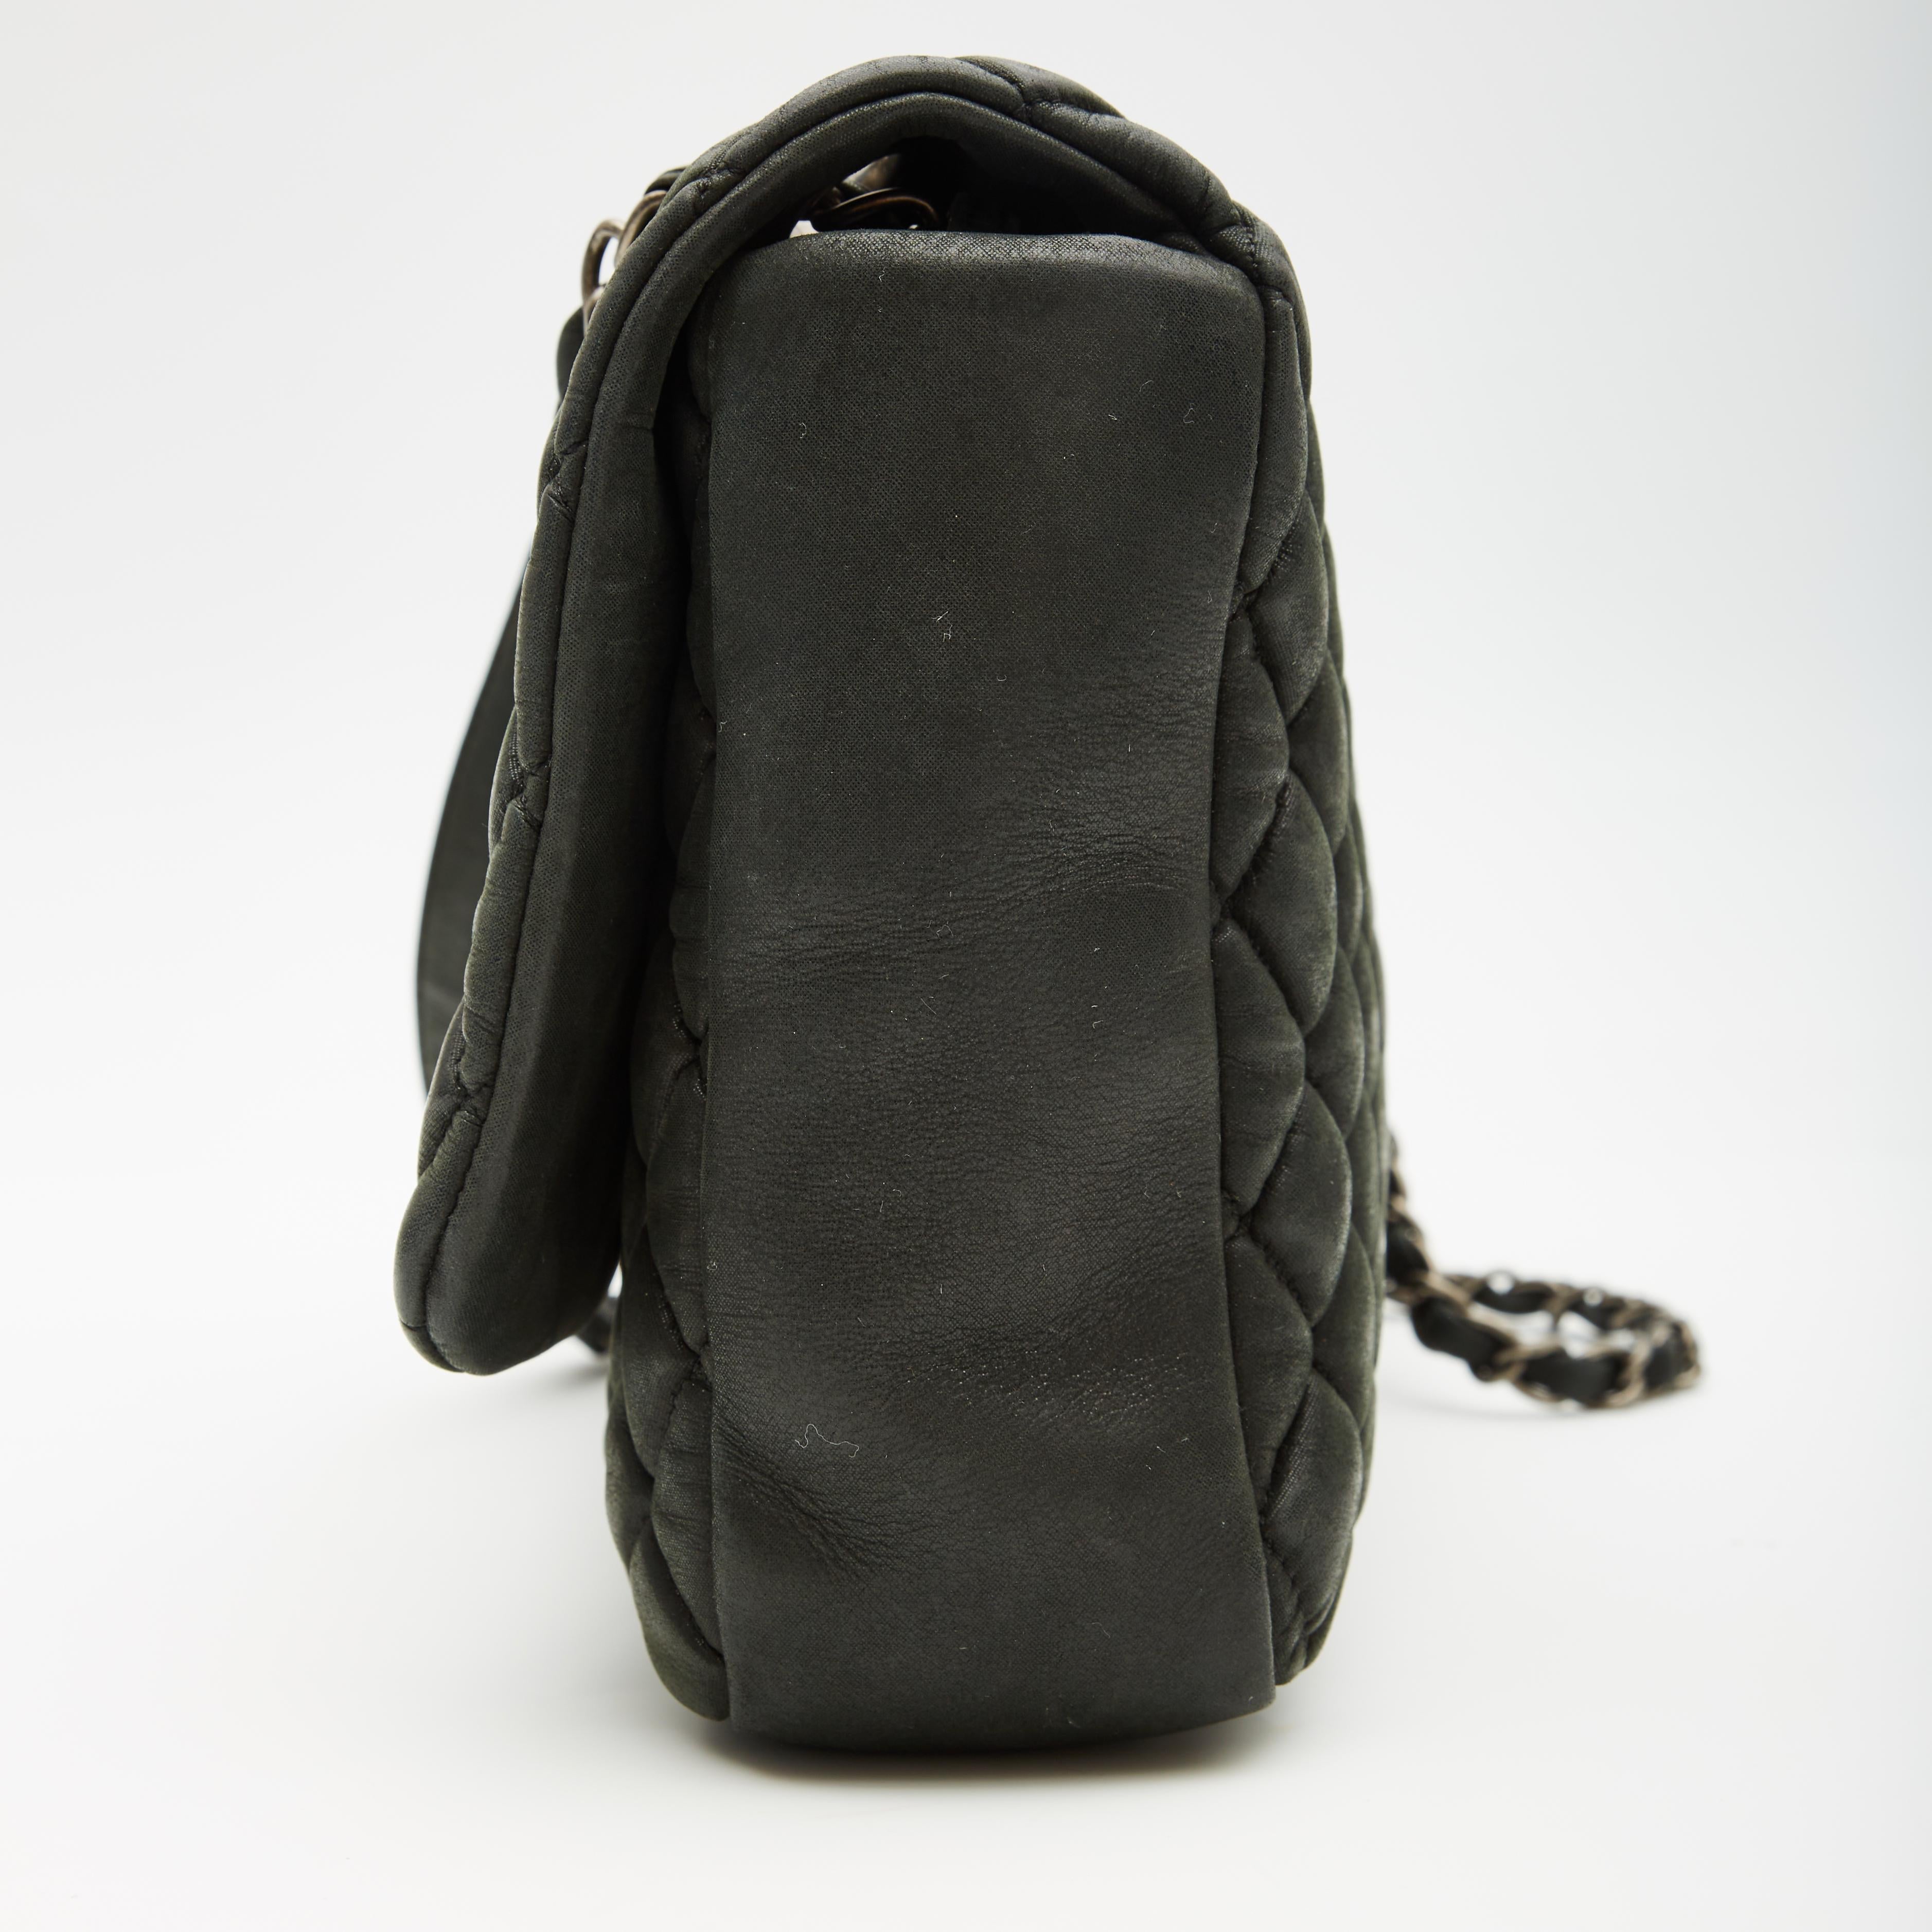 Diese Überschlagtasche ist aus schimmerndem, irisierendem, gefülltem Kalbsleder gefertigt. Die Tasche hat silberne Schulterriemen aus Kettengliedern, die mit passendem Leder verflochten sind, und ein Schulterpad aus Leder. Die Vorderklappe wird mit